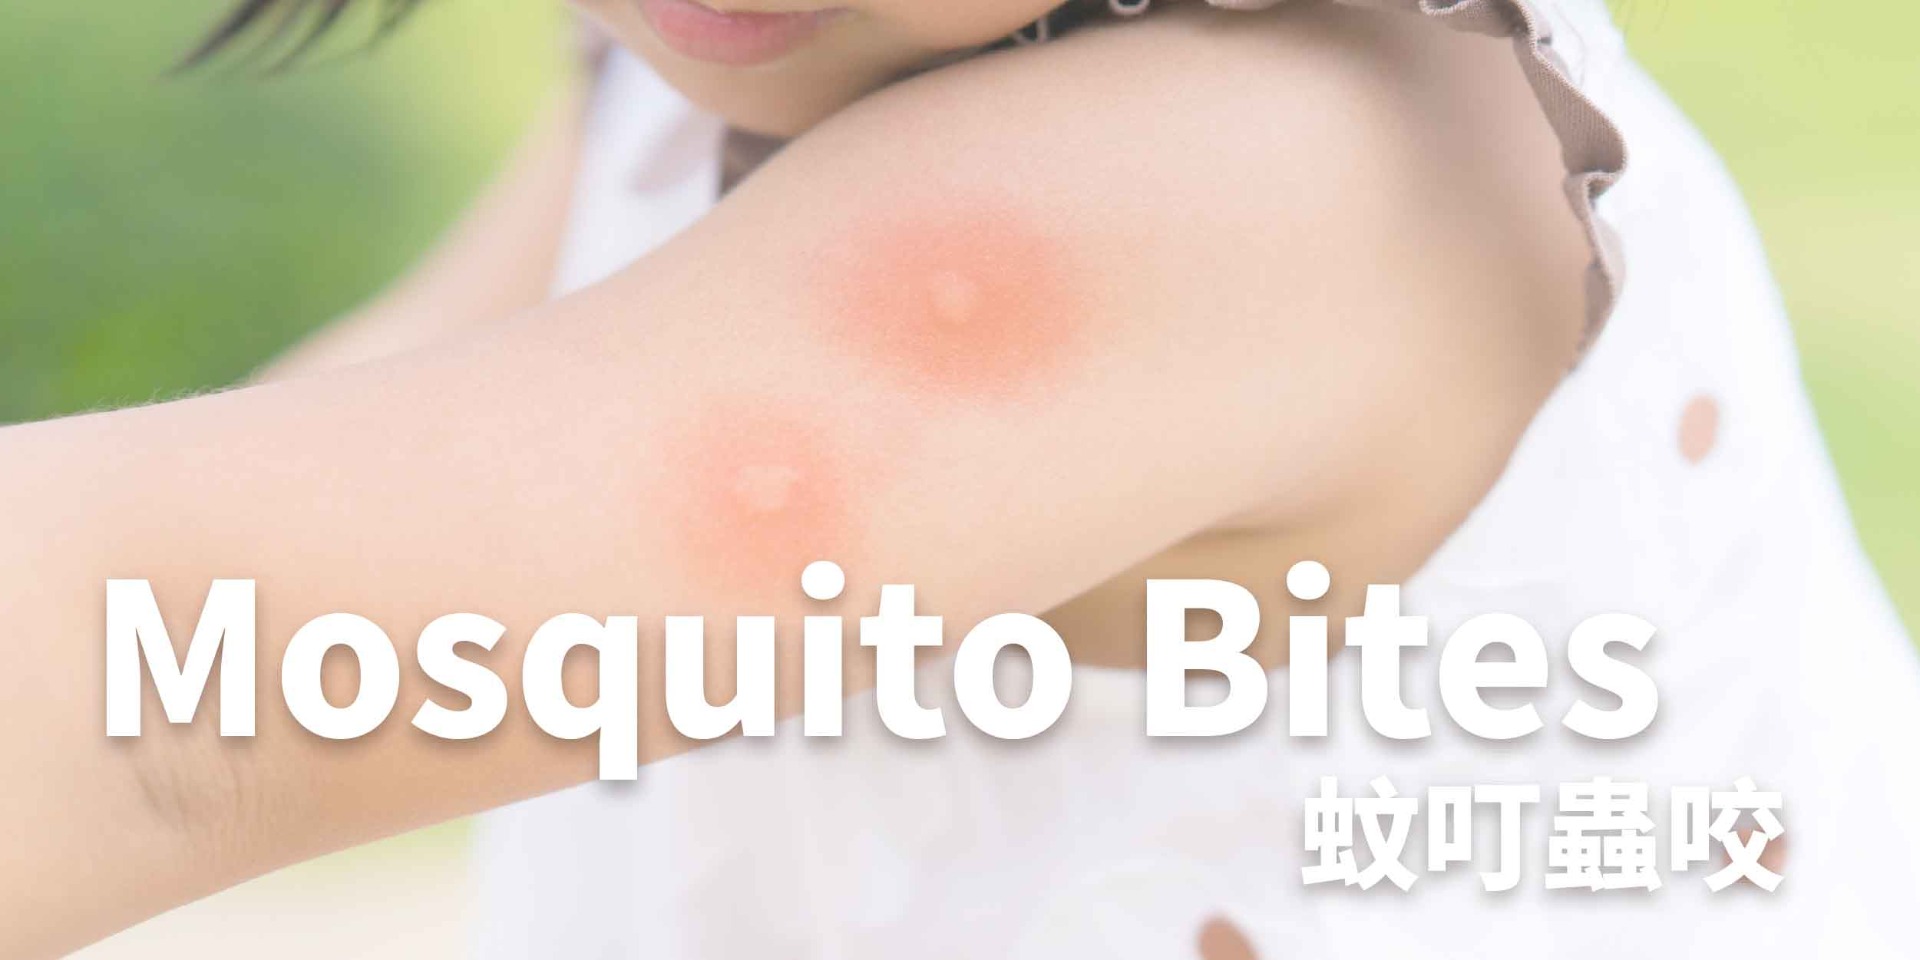 蚊叮蟲咬,AQ Bio消毒殺菌噴霧、殺菌達99.9999%, 對抗濕疹,暗瘡,皮膚敏感,念珠菌,鼻敏感,喉嚨痛, 助皮膚修護細胞, 產生抗菌能